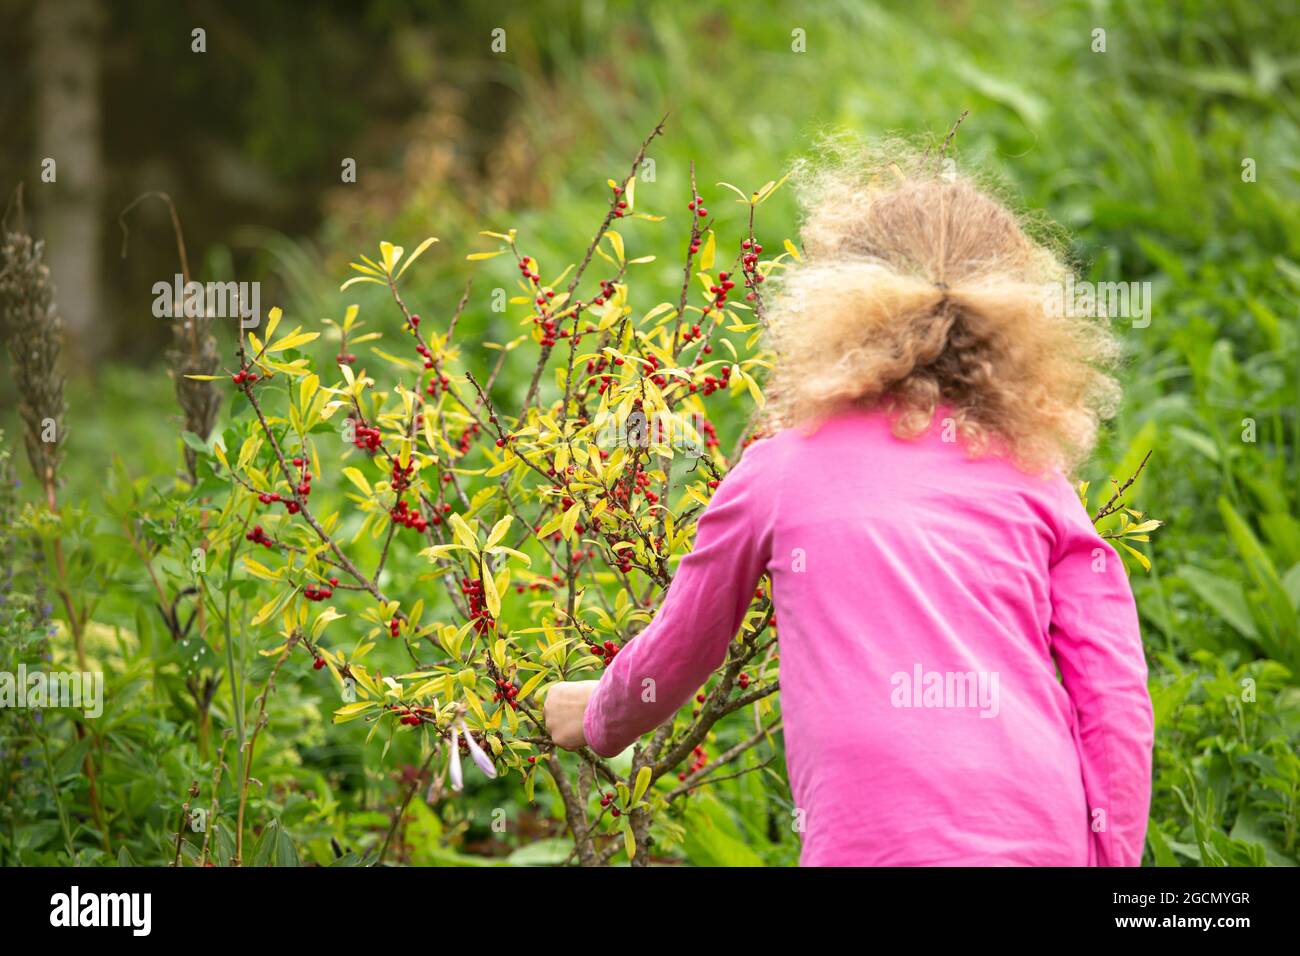 Jeune enfant de 4 ans curieux cueille et mange des baies rouges de Daphne mezereum très toxiques. Concept de risque pour la santé et d'empoisonnement. Banque D'Images